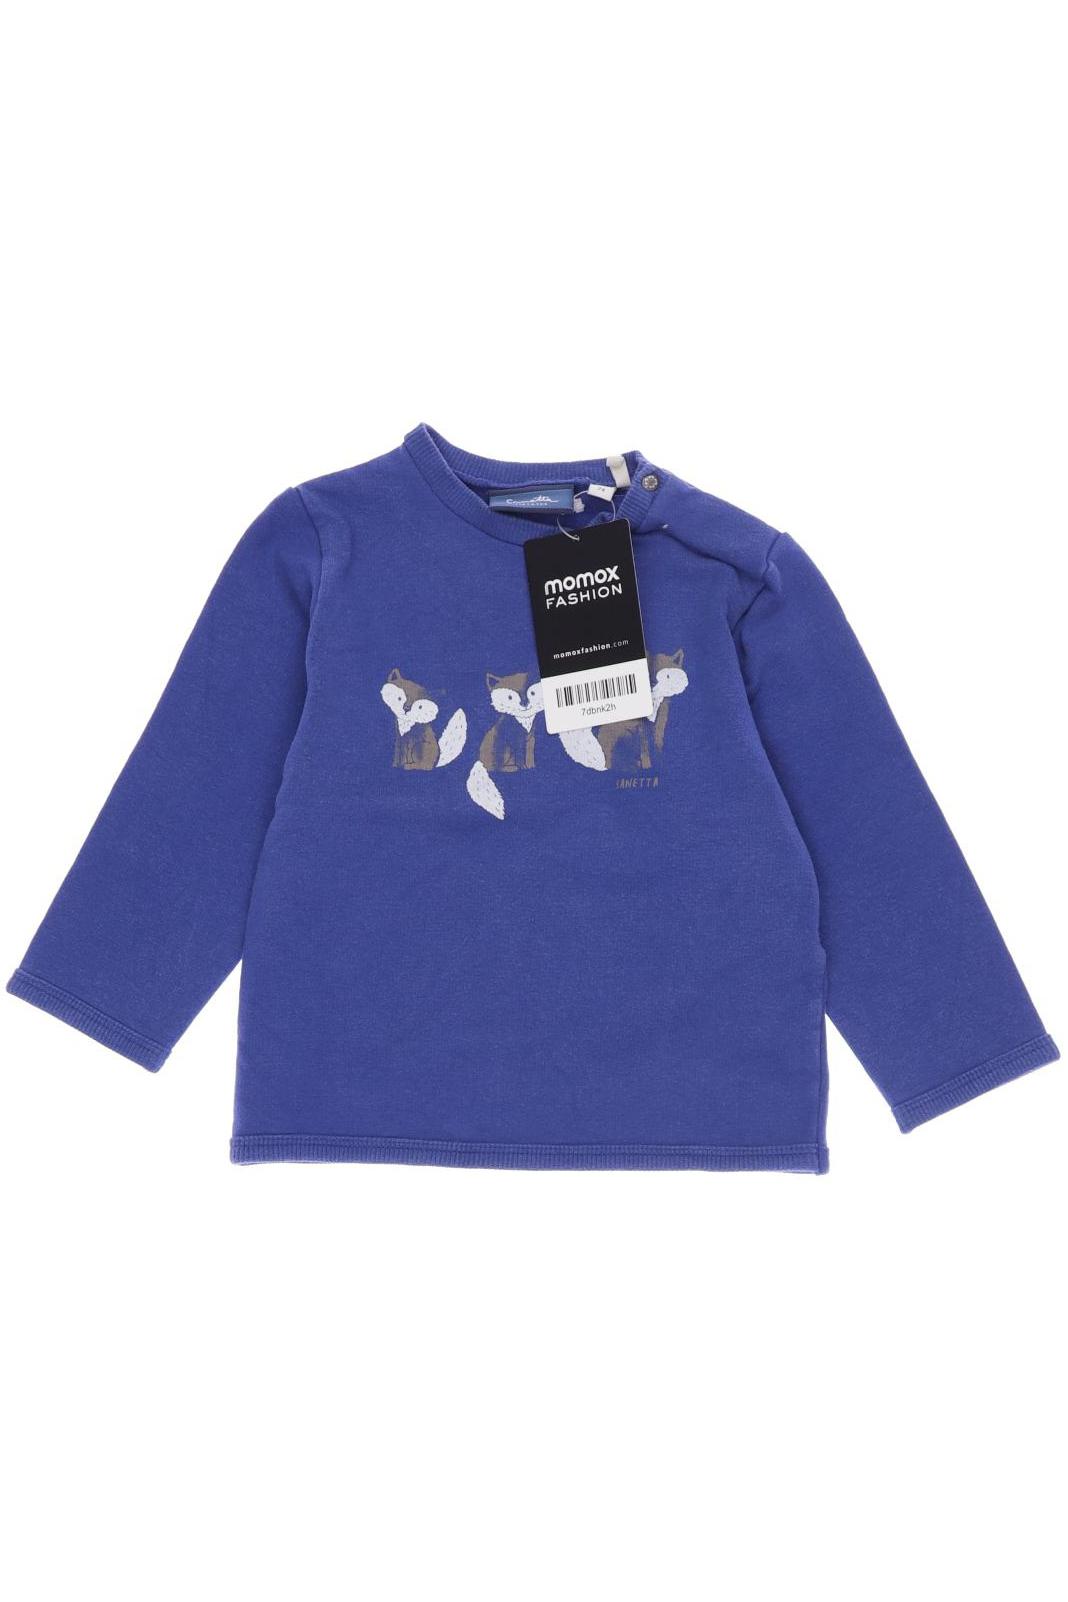 Sanetta Herren Hoodies & Sweater, blau, Gr. 74 von Sanetta